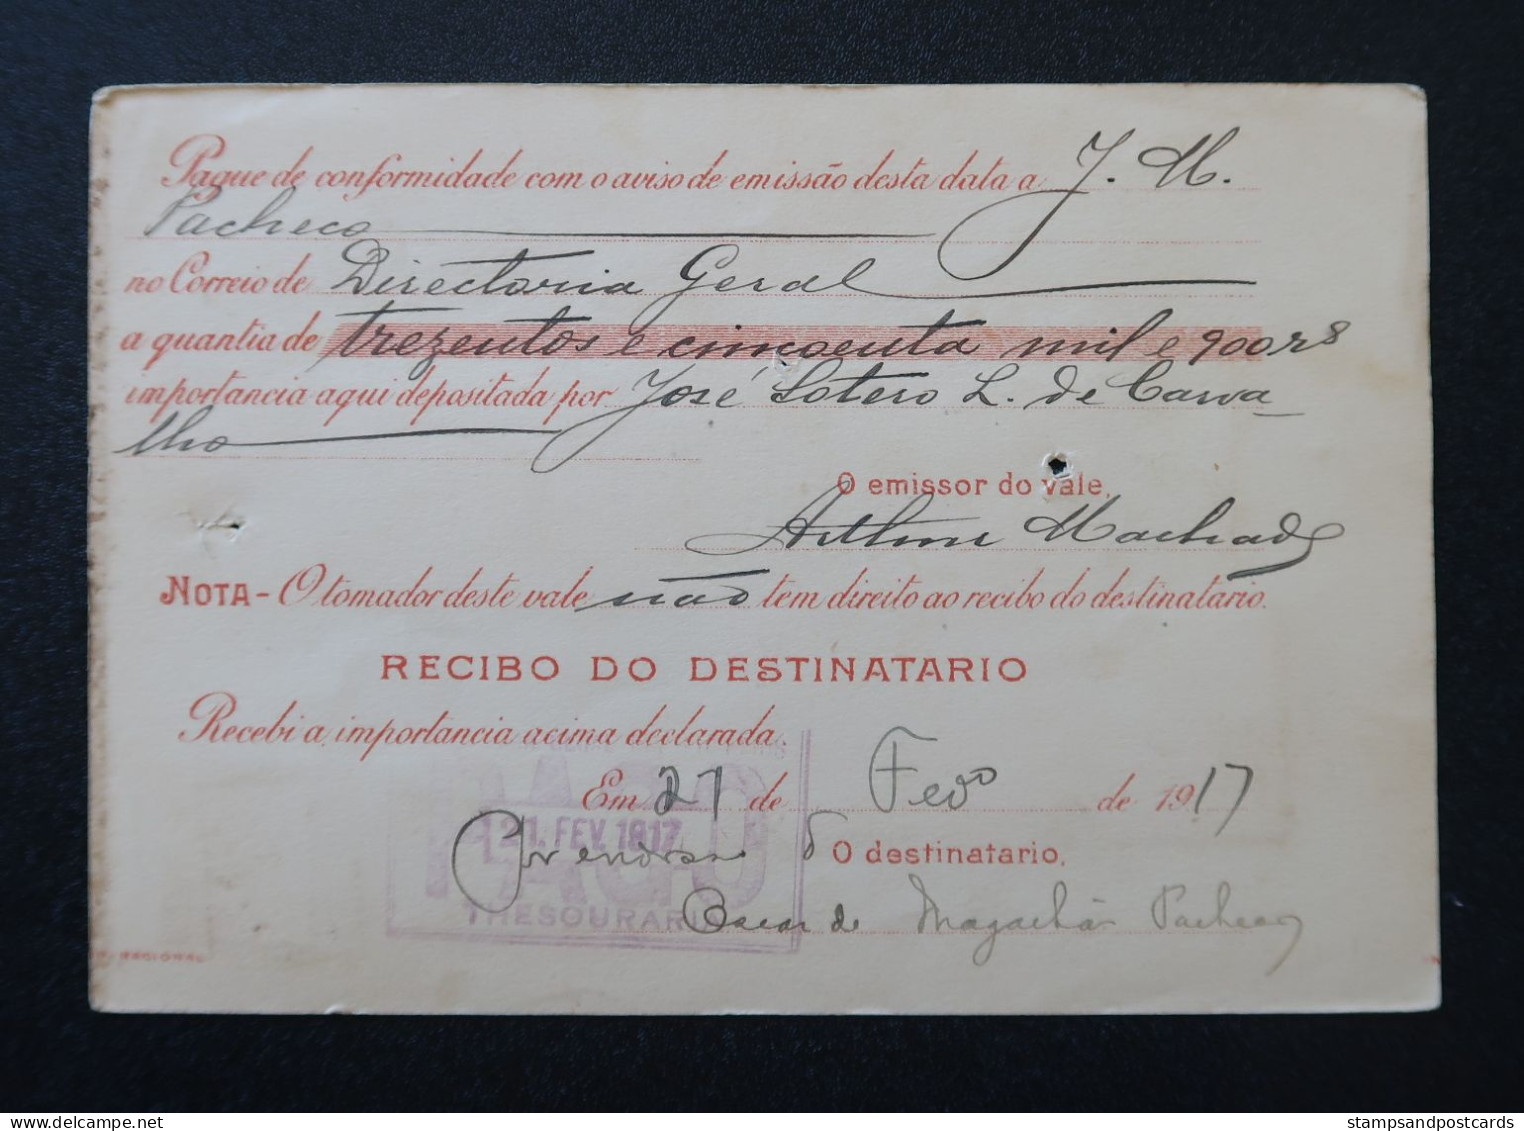 Brèsil Brasil Mandat Vale Postal 1917 Ouro Preto Minas Gerais Timbre Fiscal Deposito Brazil Money Order Revenue Stamp - Cartas & Documentos